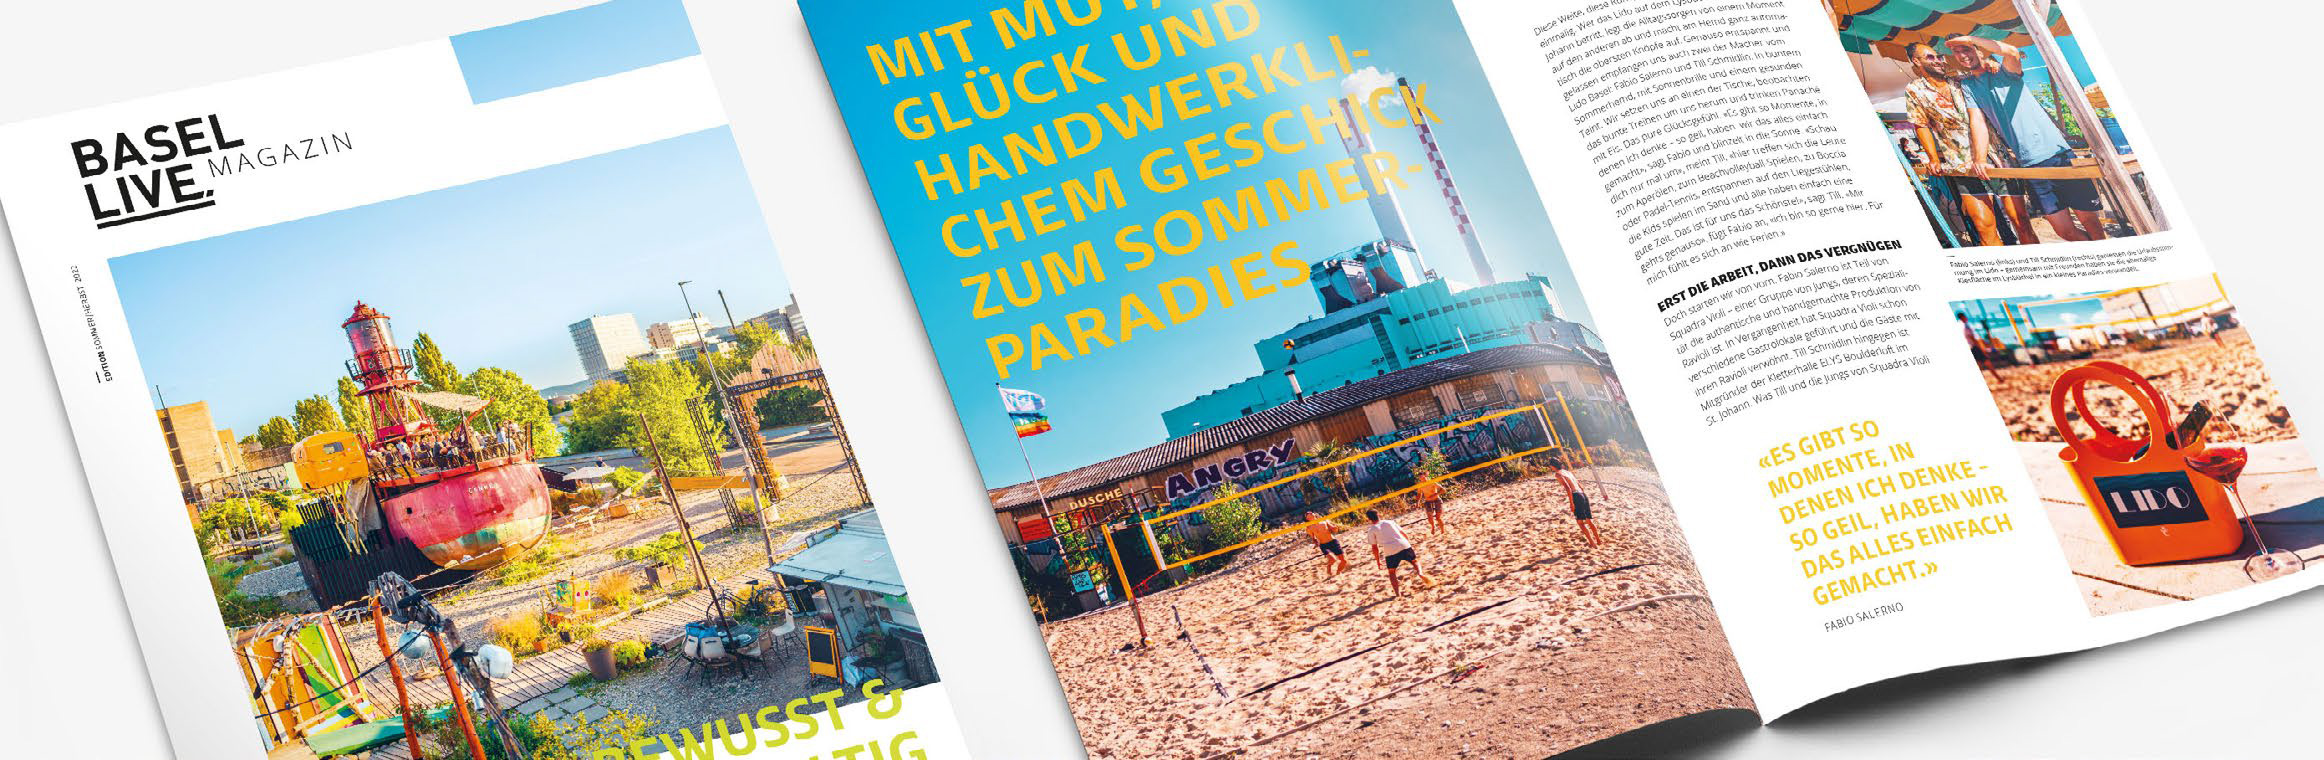 BaselLive Magazin – Starke Präsenz im Lifestyle Magazin der Region Basel